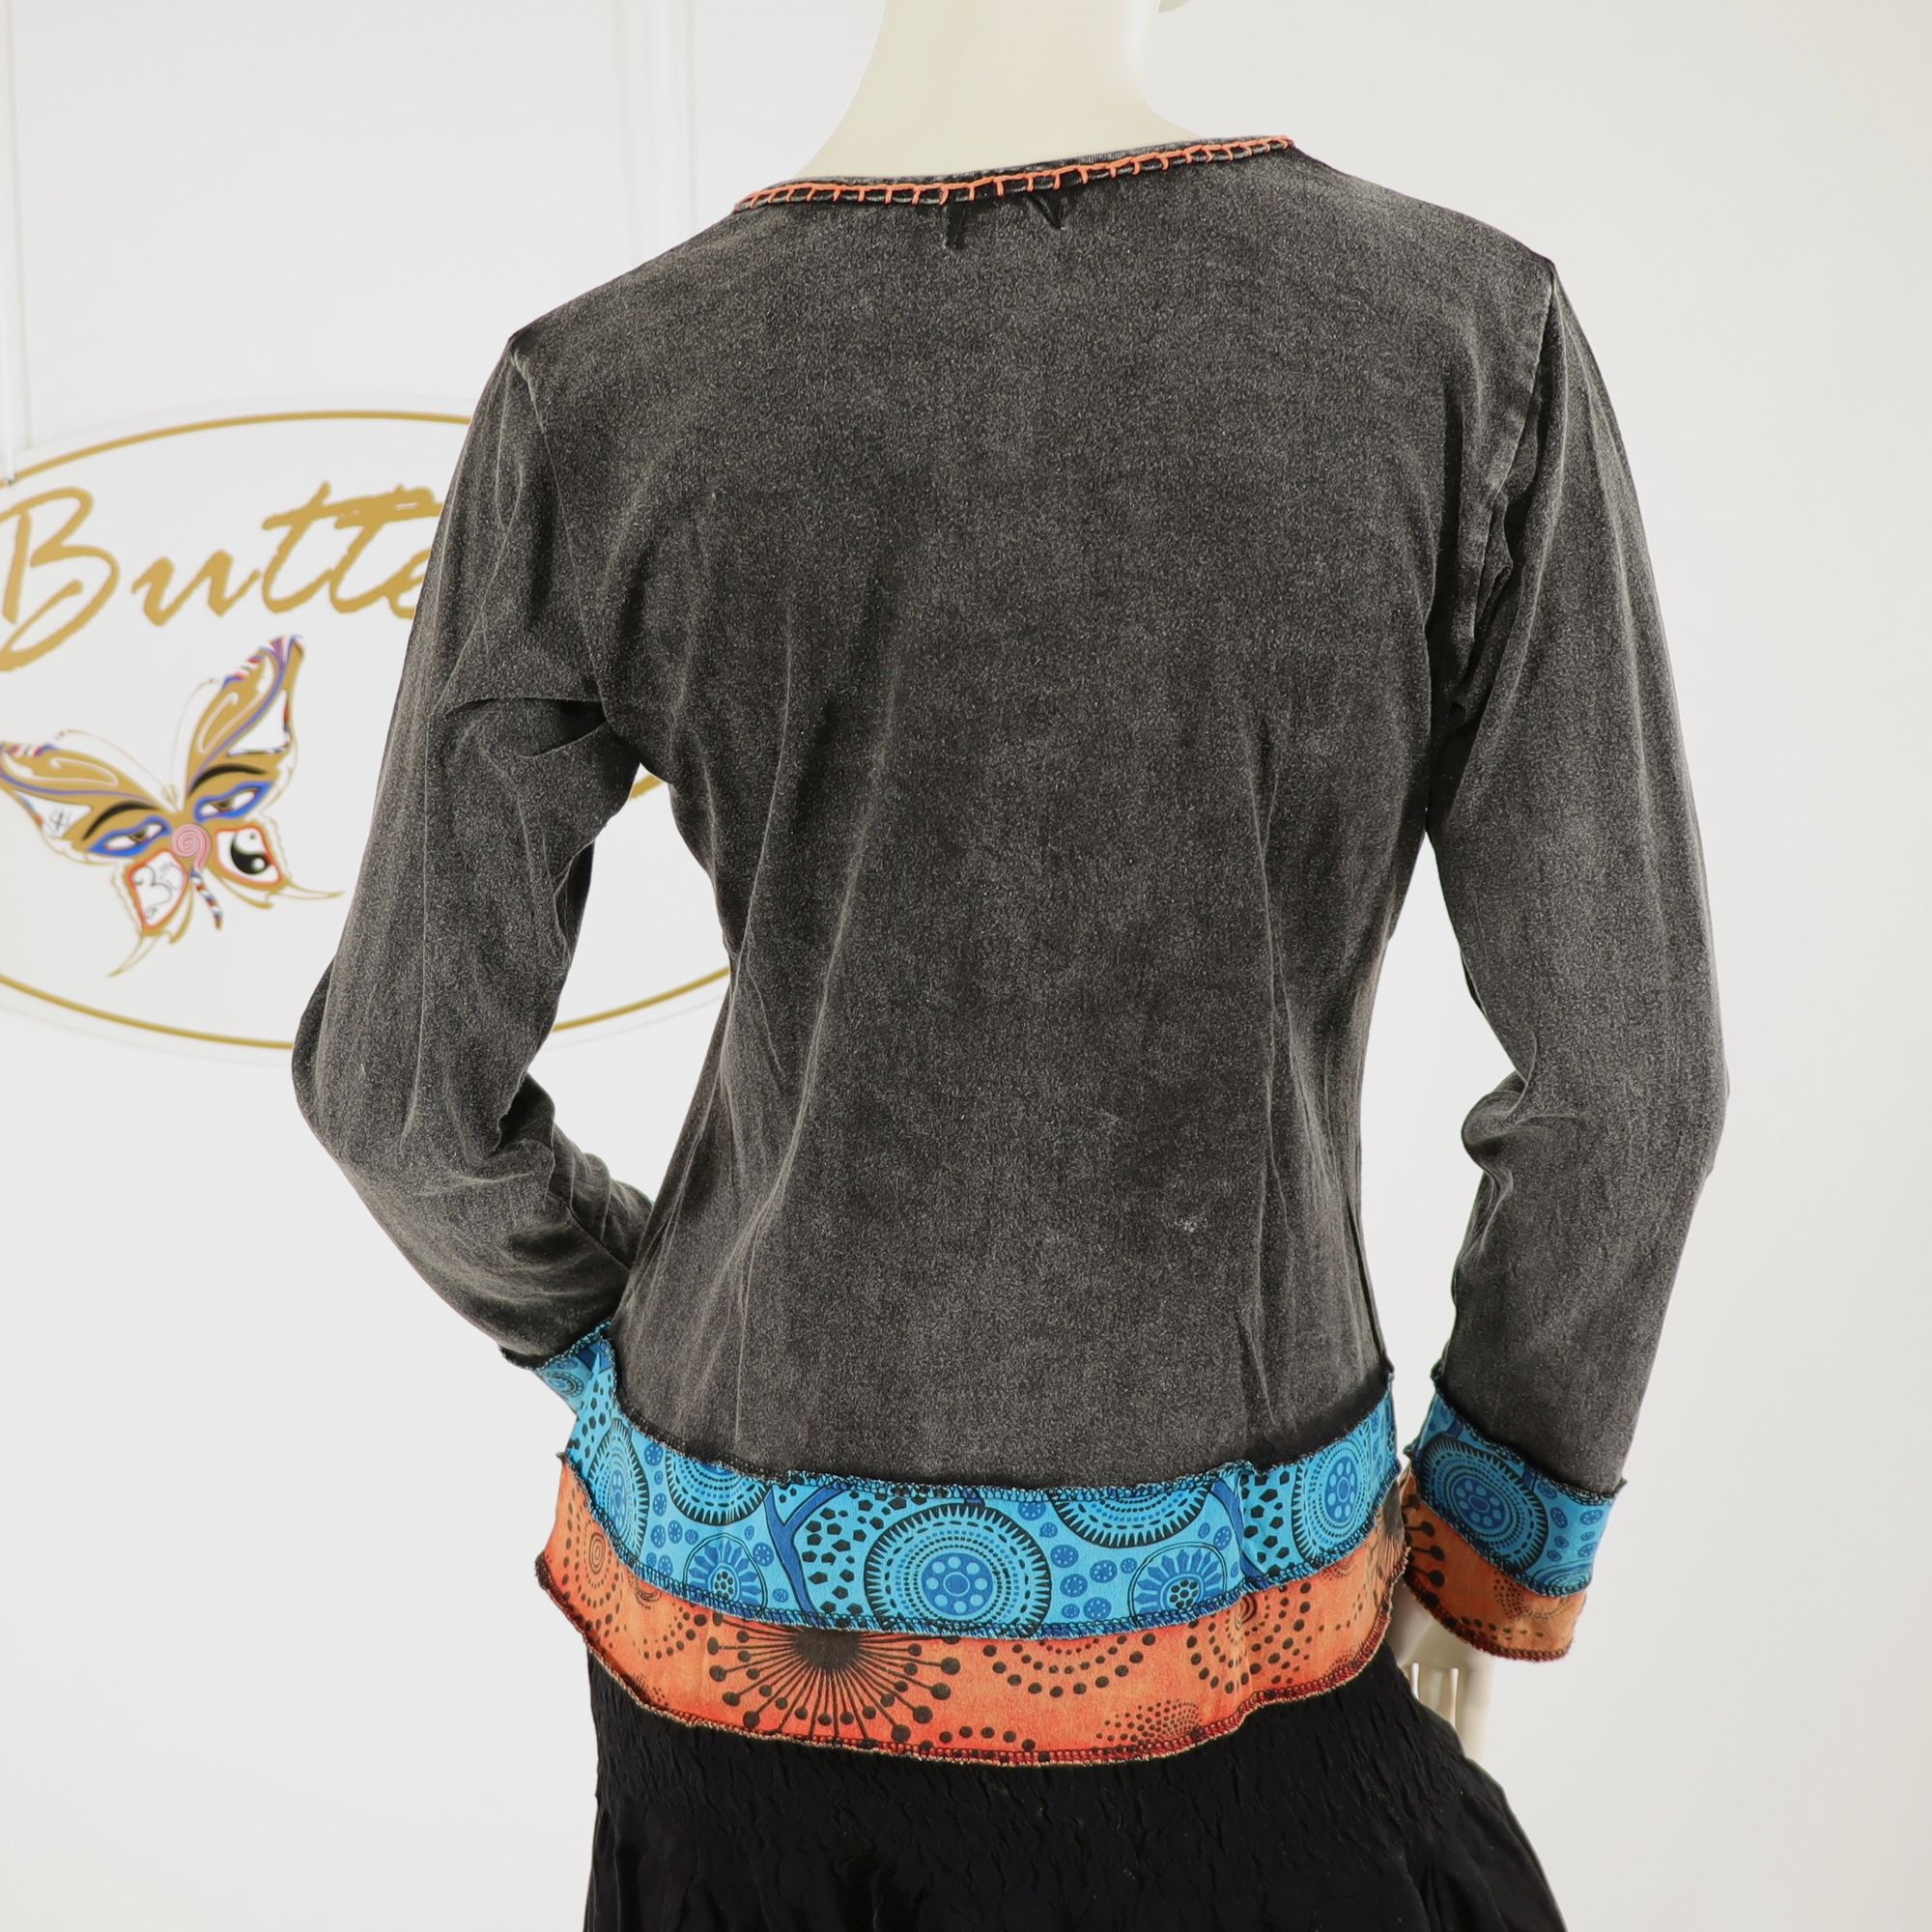 Shirt im bunten Patchwork Design - 100% Baumwolle - UniColor mit Streifen und großer Blume als Stickerei - blumig, bunt, besonders - Dein Langarm-Shirt für bunte Herbstabende - Fair gehandelt aus Nepal